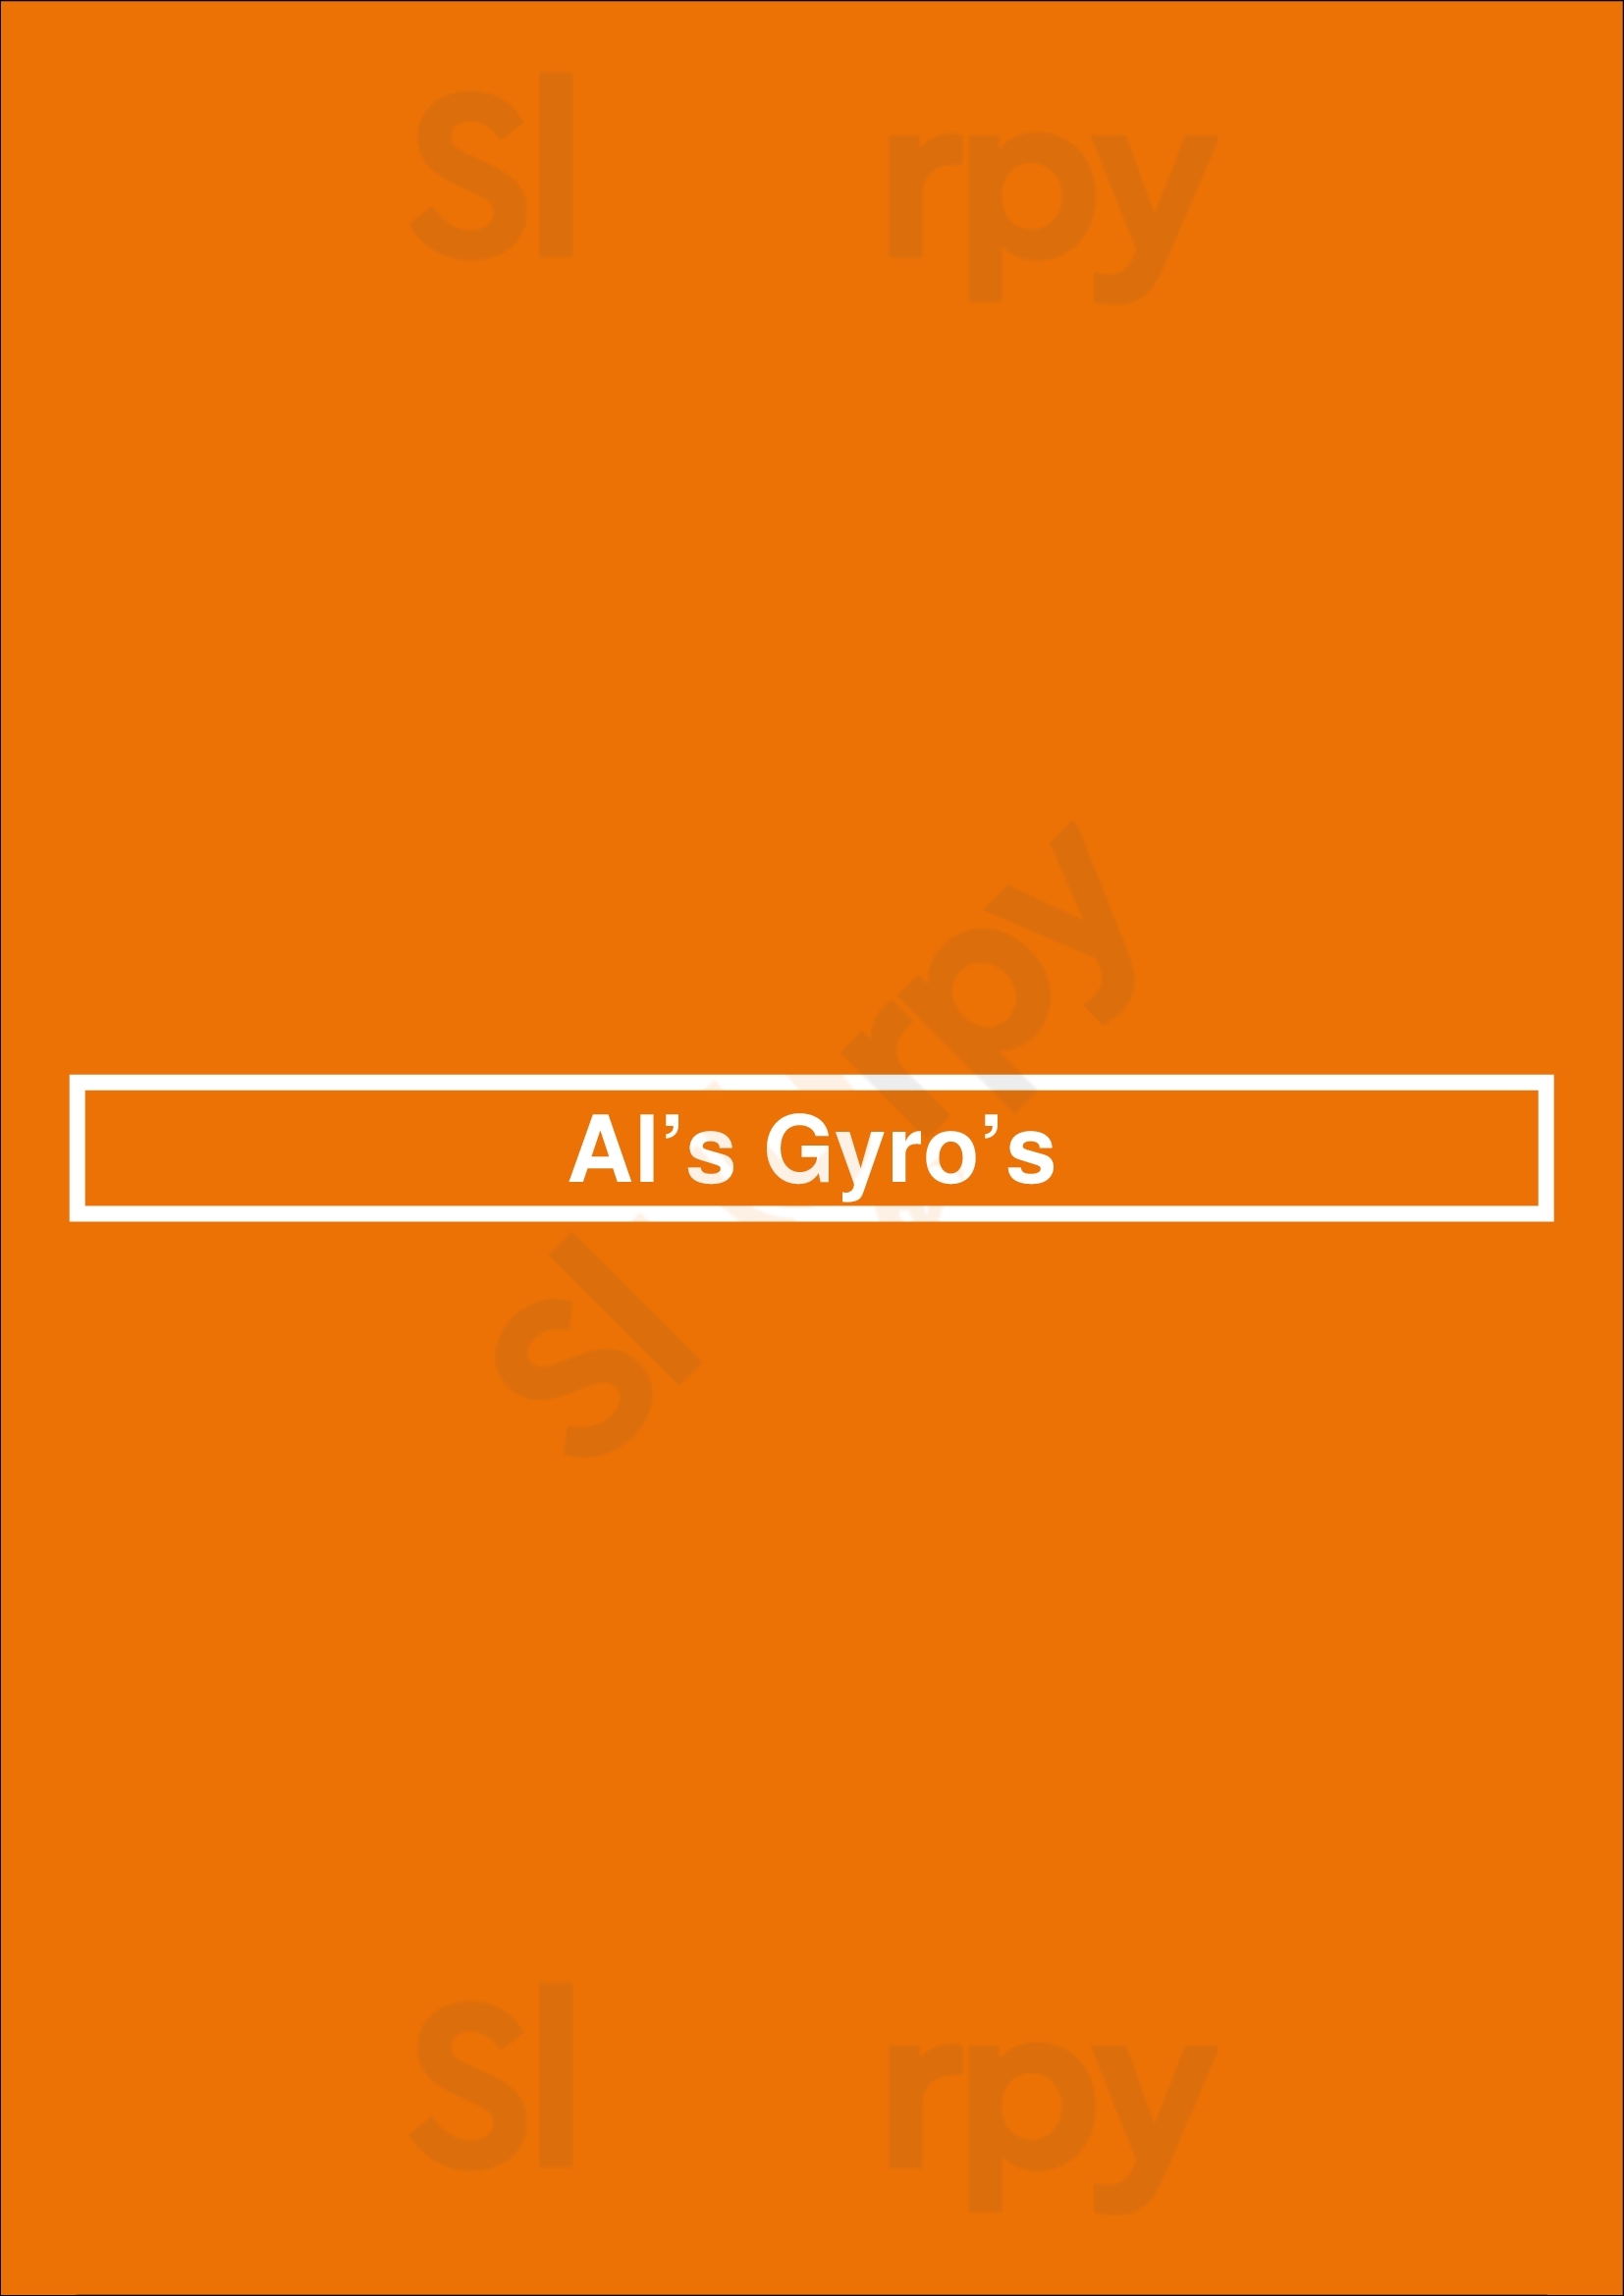 Al’s Gyro’s Glendale Menu - 1